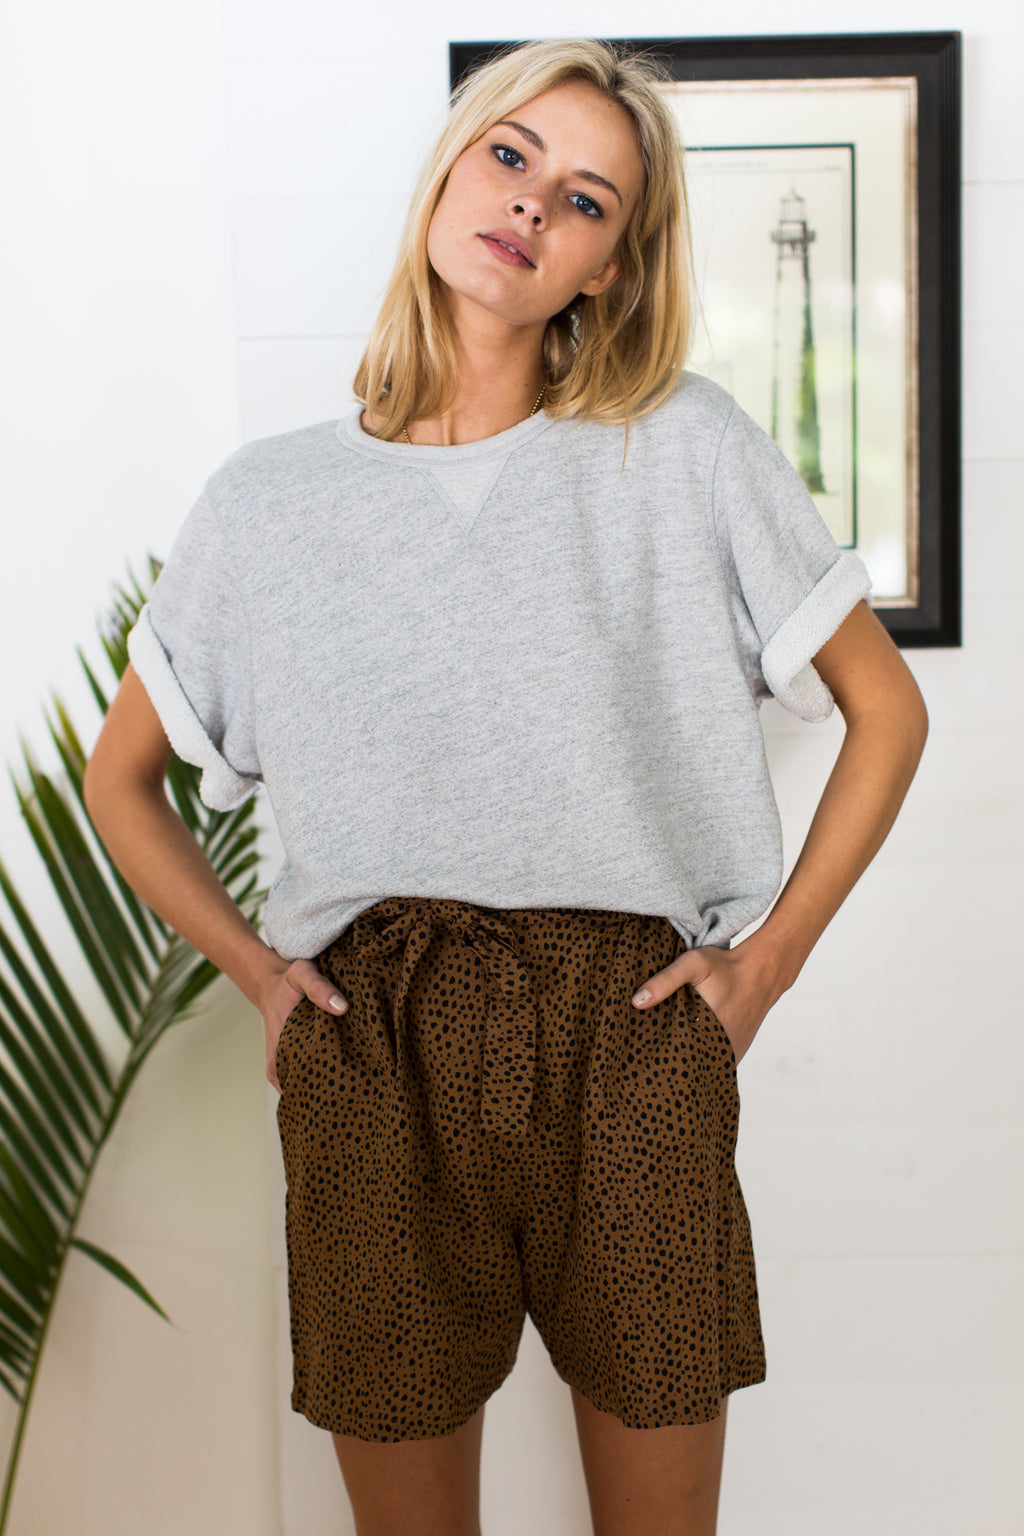 Short Sleeve Sweatshirt – Heather Grey